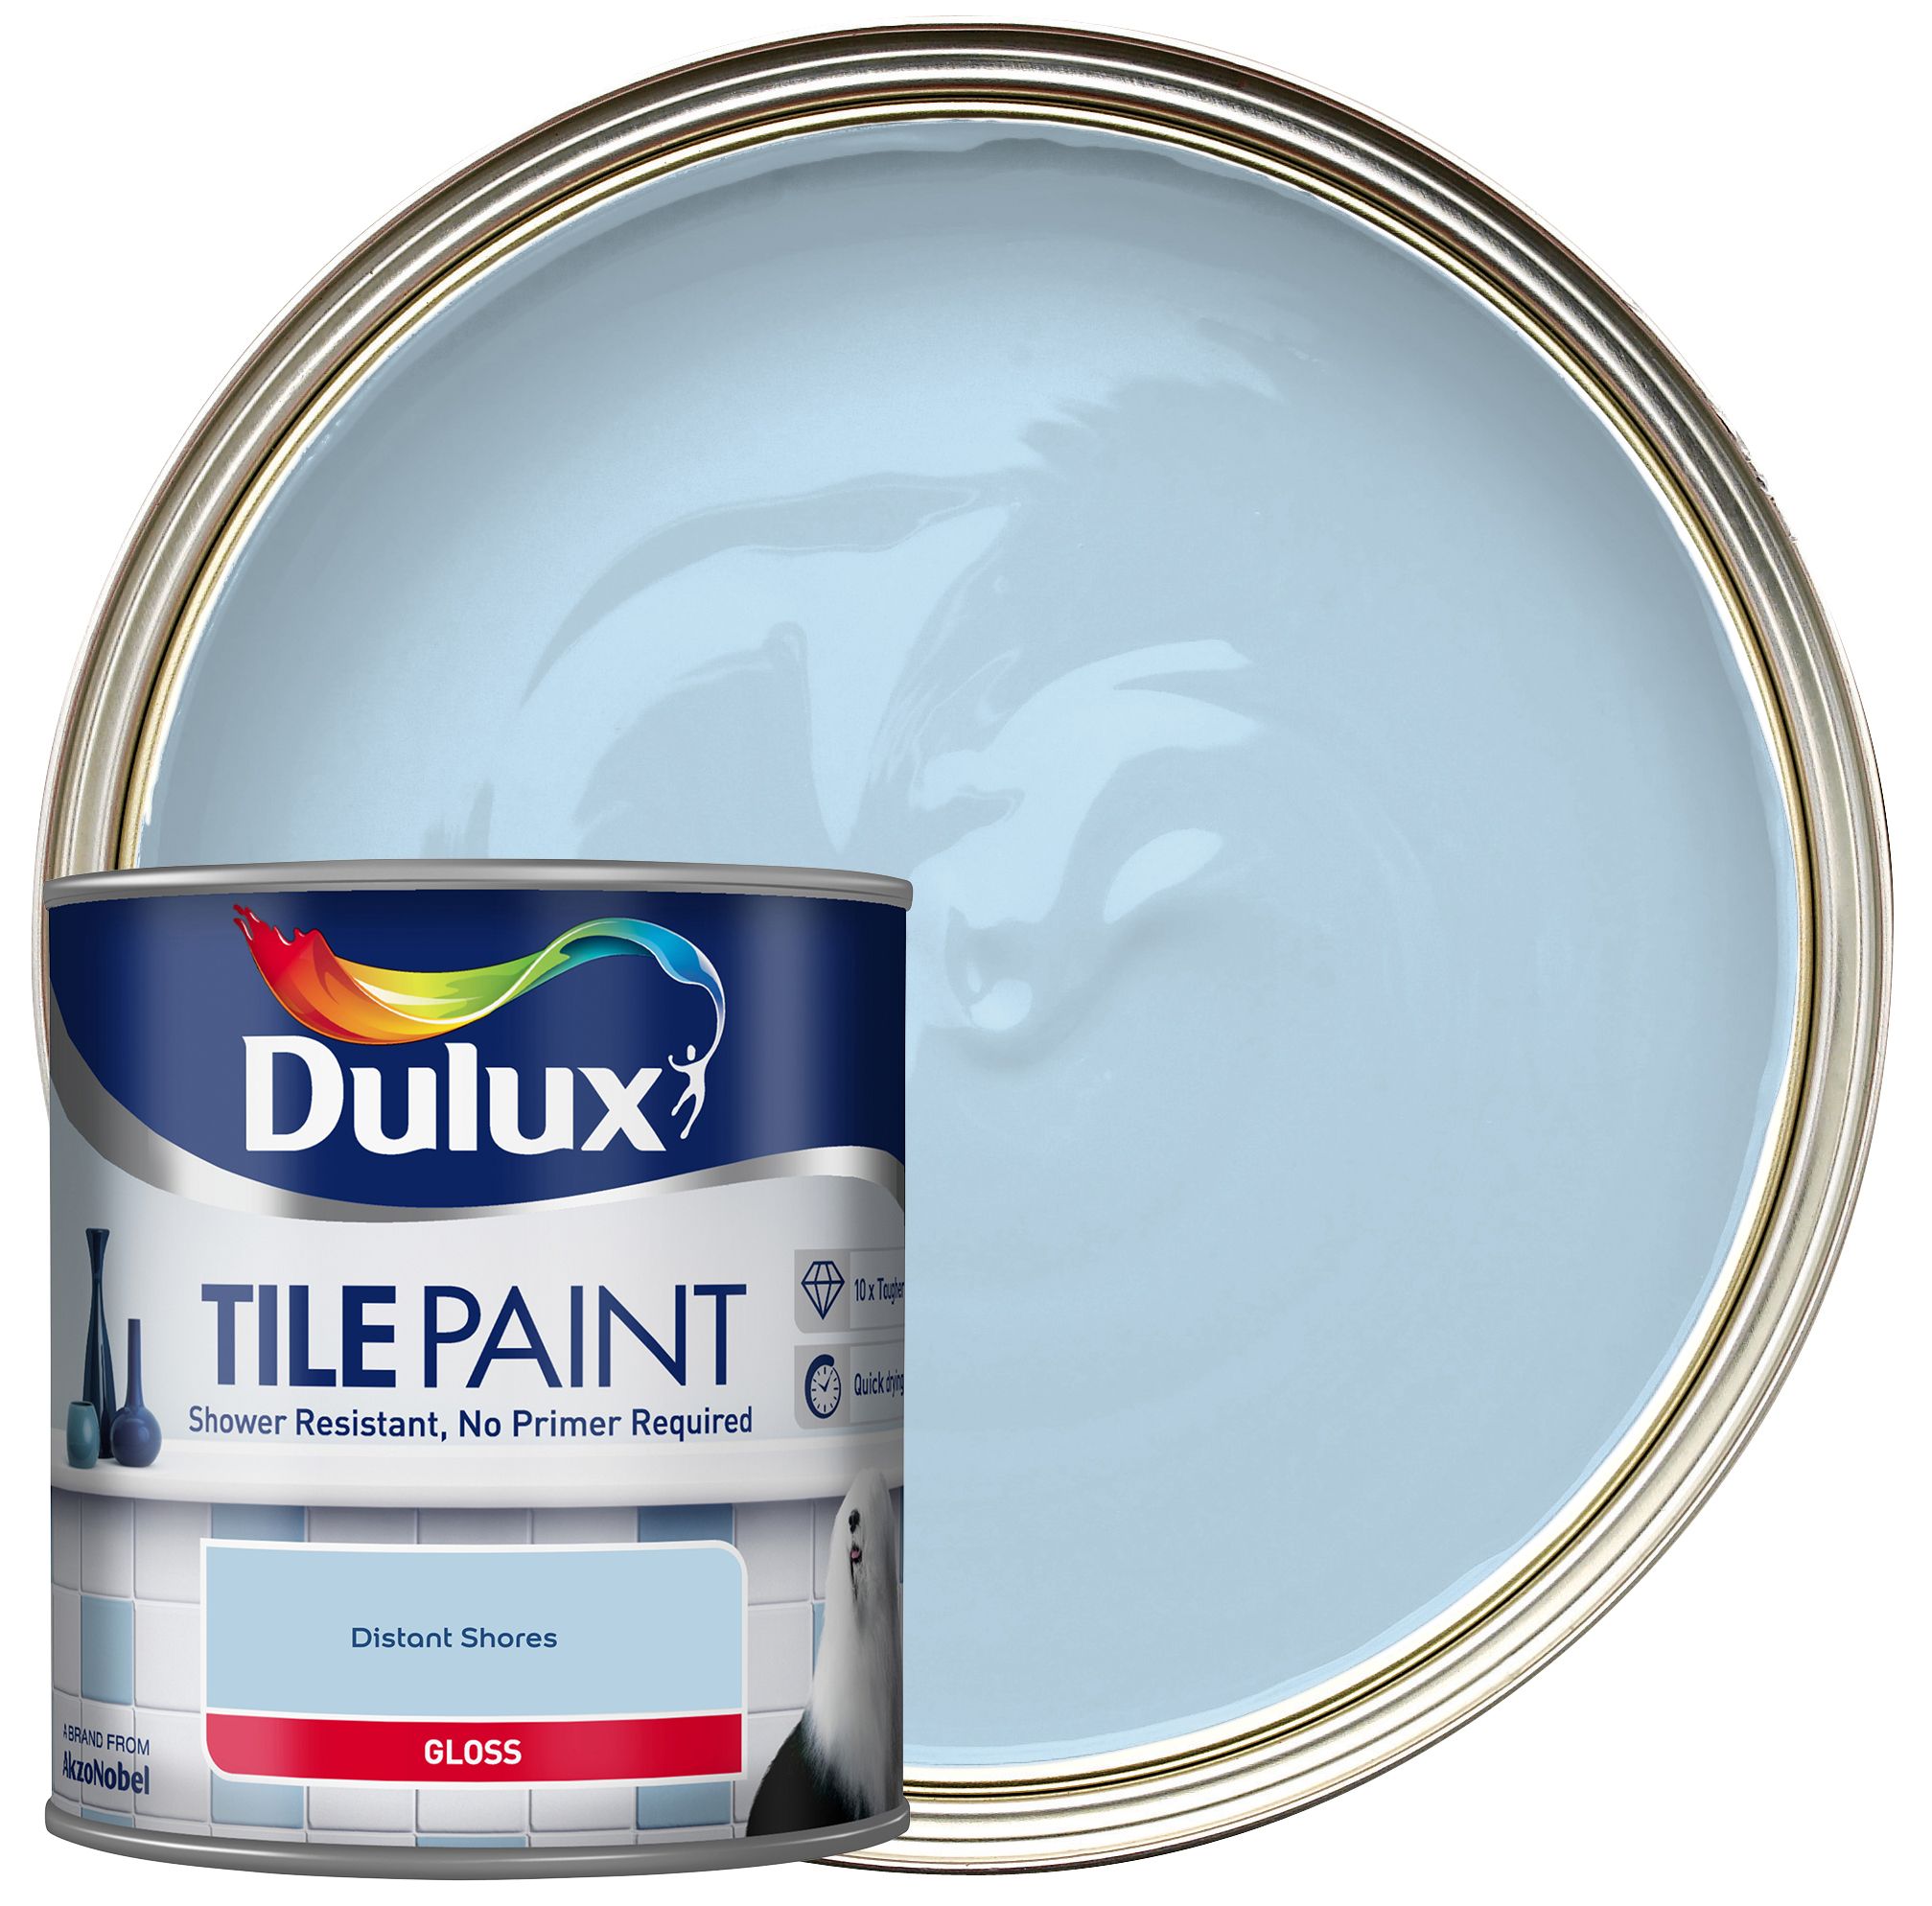 Image of Dulux Tile Paint - Distant Shores - 600ml